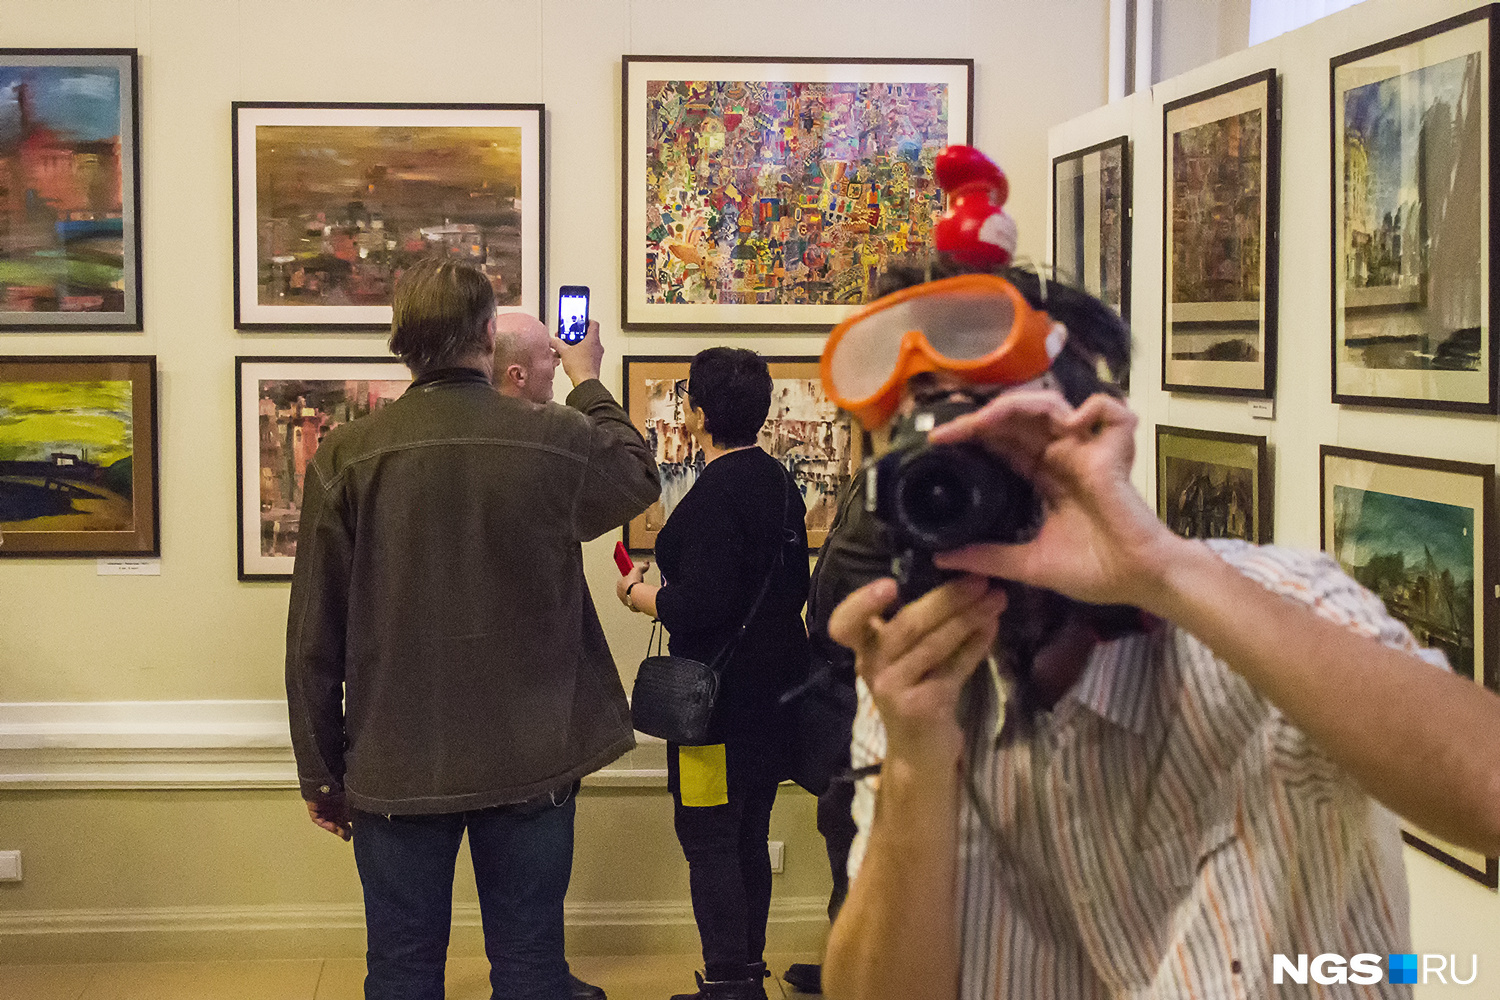 Мизин шутит, что выставка стала ответом тем, кто постоянно спрашивает современных художников: «А рисовать-то умеете?»